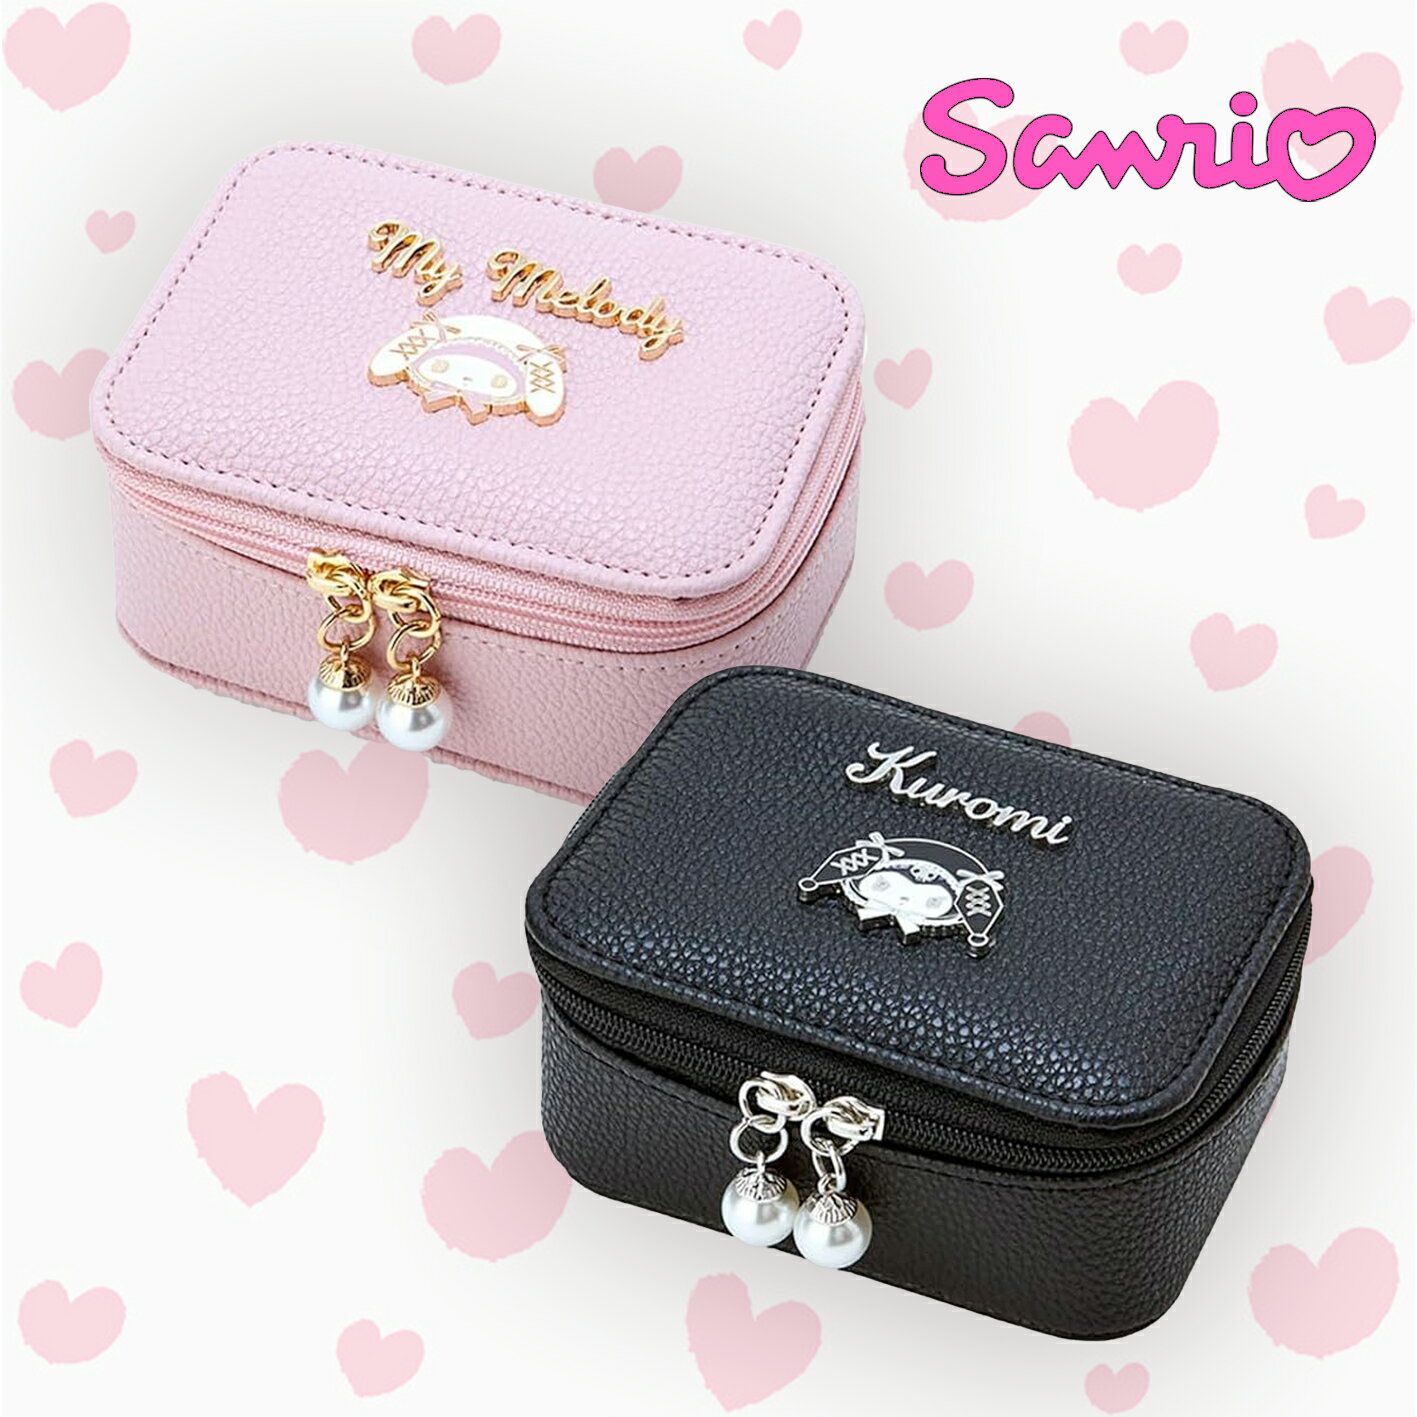 仿皮革飾品收納盒-酷洛米 美樂蒂 三麗鷗 Sanrio 日本進口正版授權